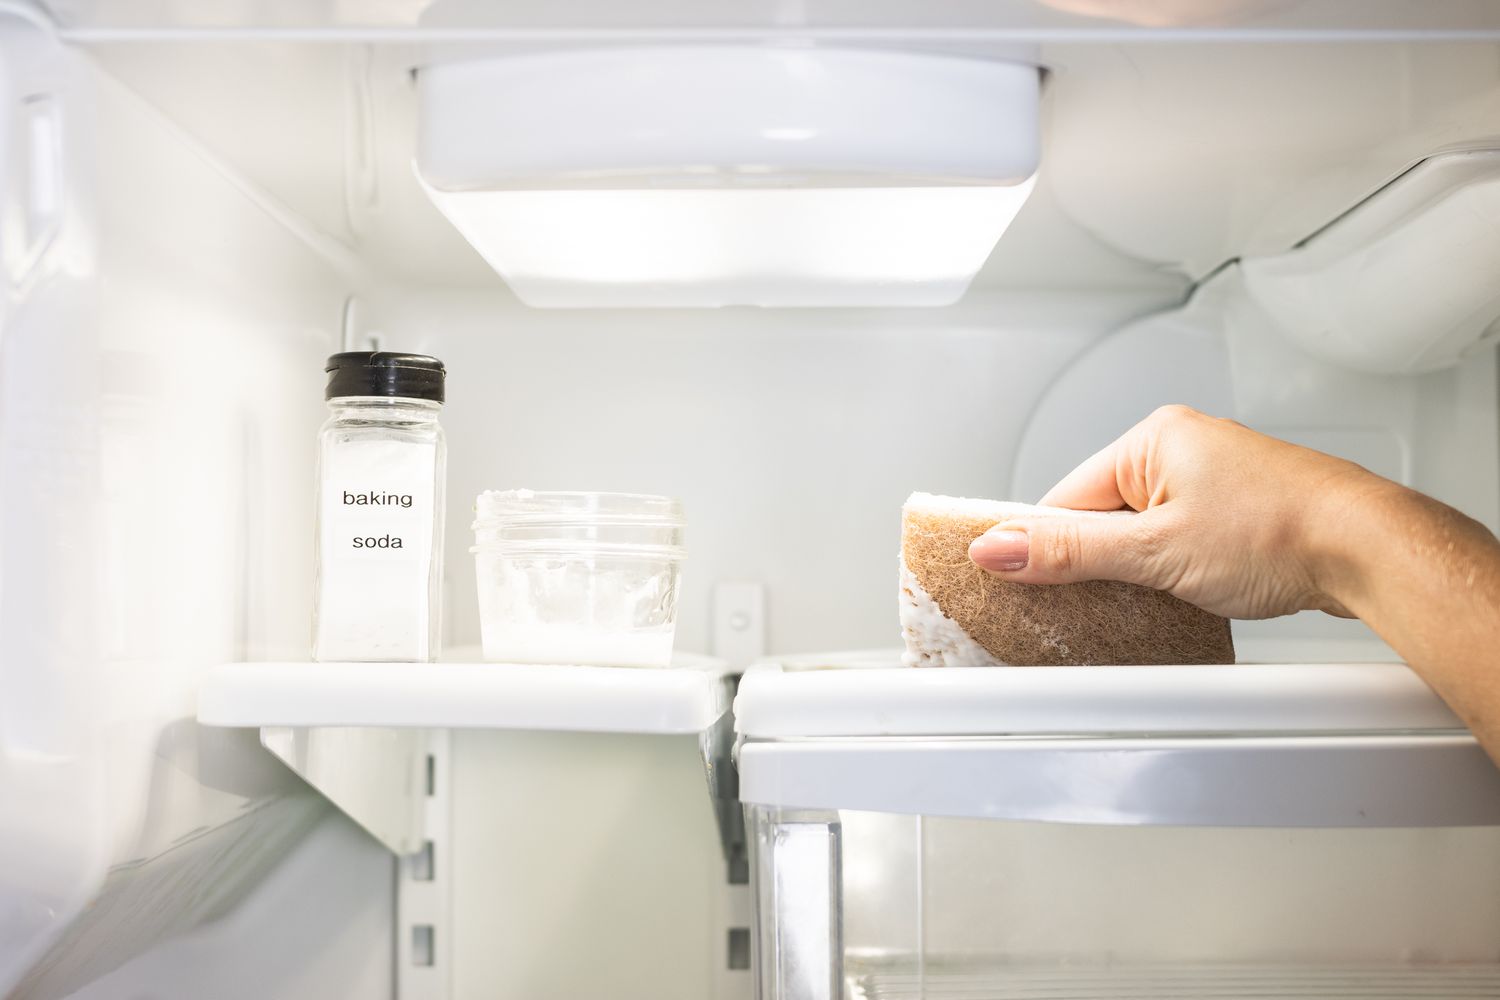 Prateleira da geladeira sendo limpa com bicarbonato de sódio, água e esponja